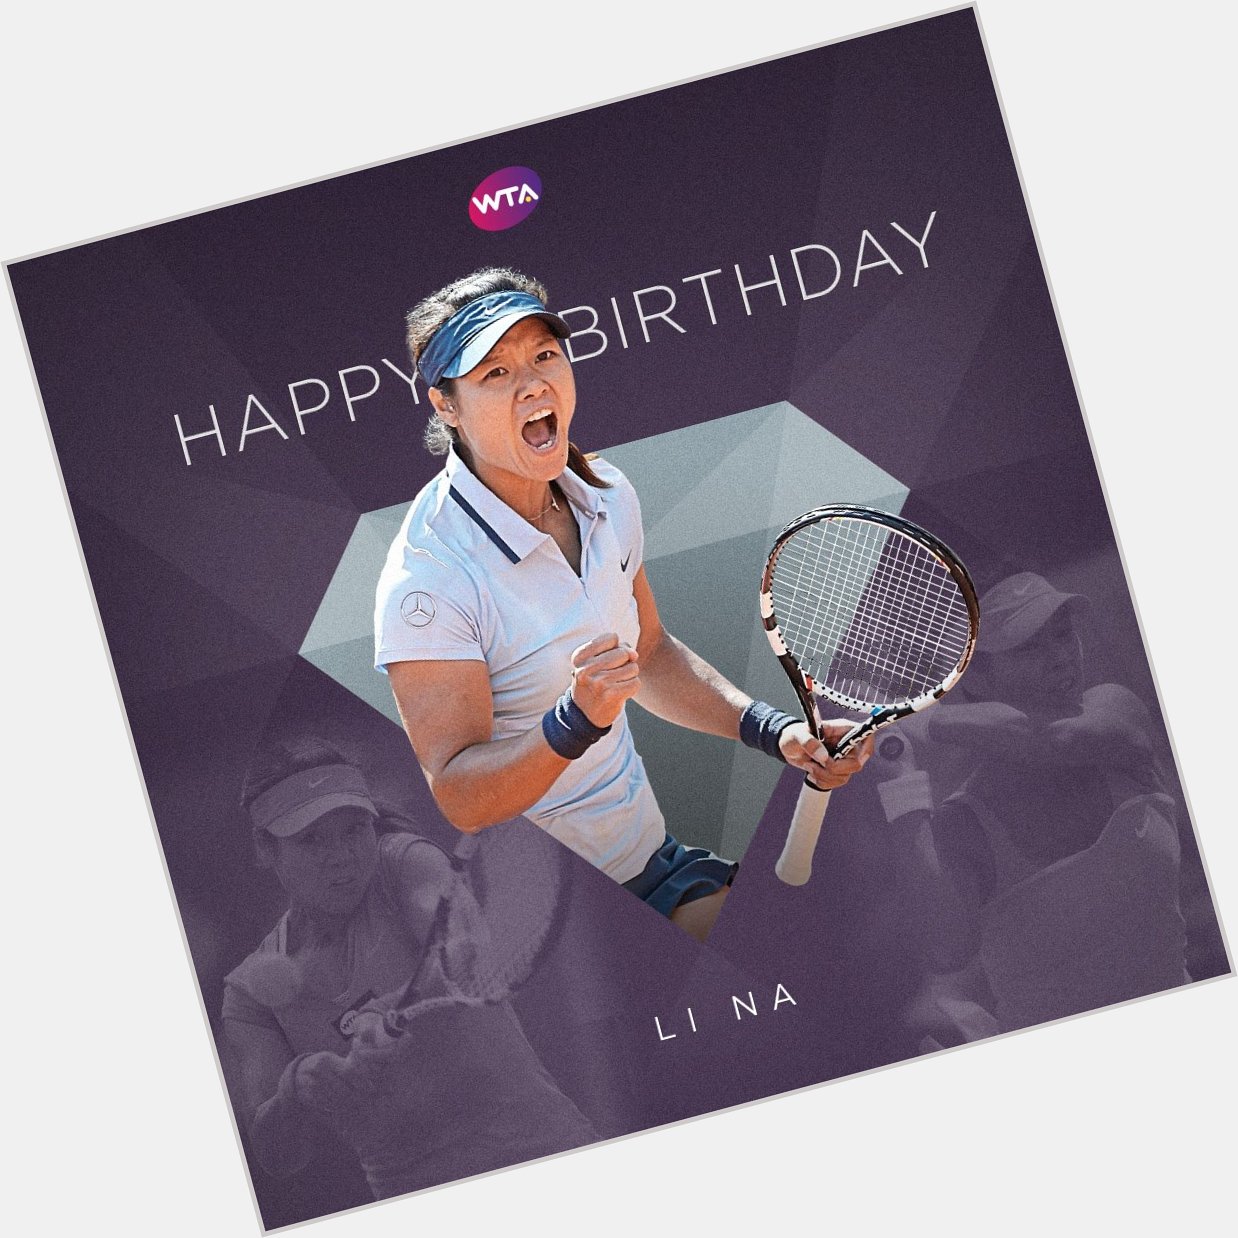 Happy birthday to two-time Grand Slam winner Li Na!  